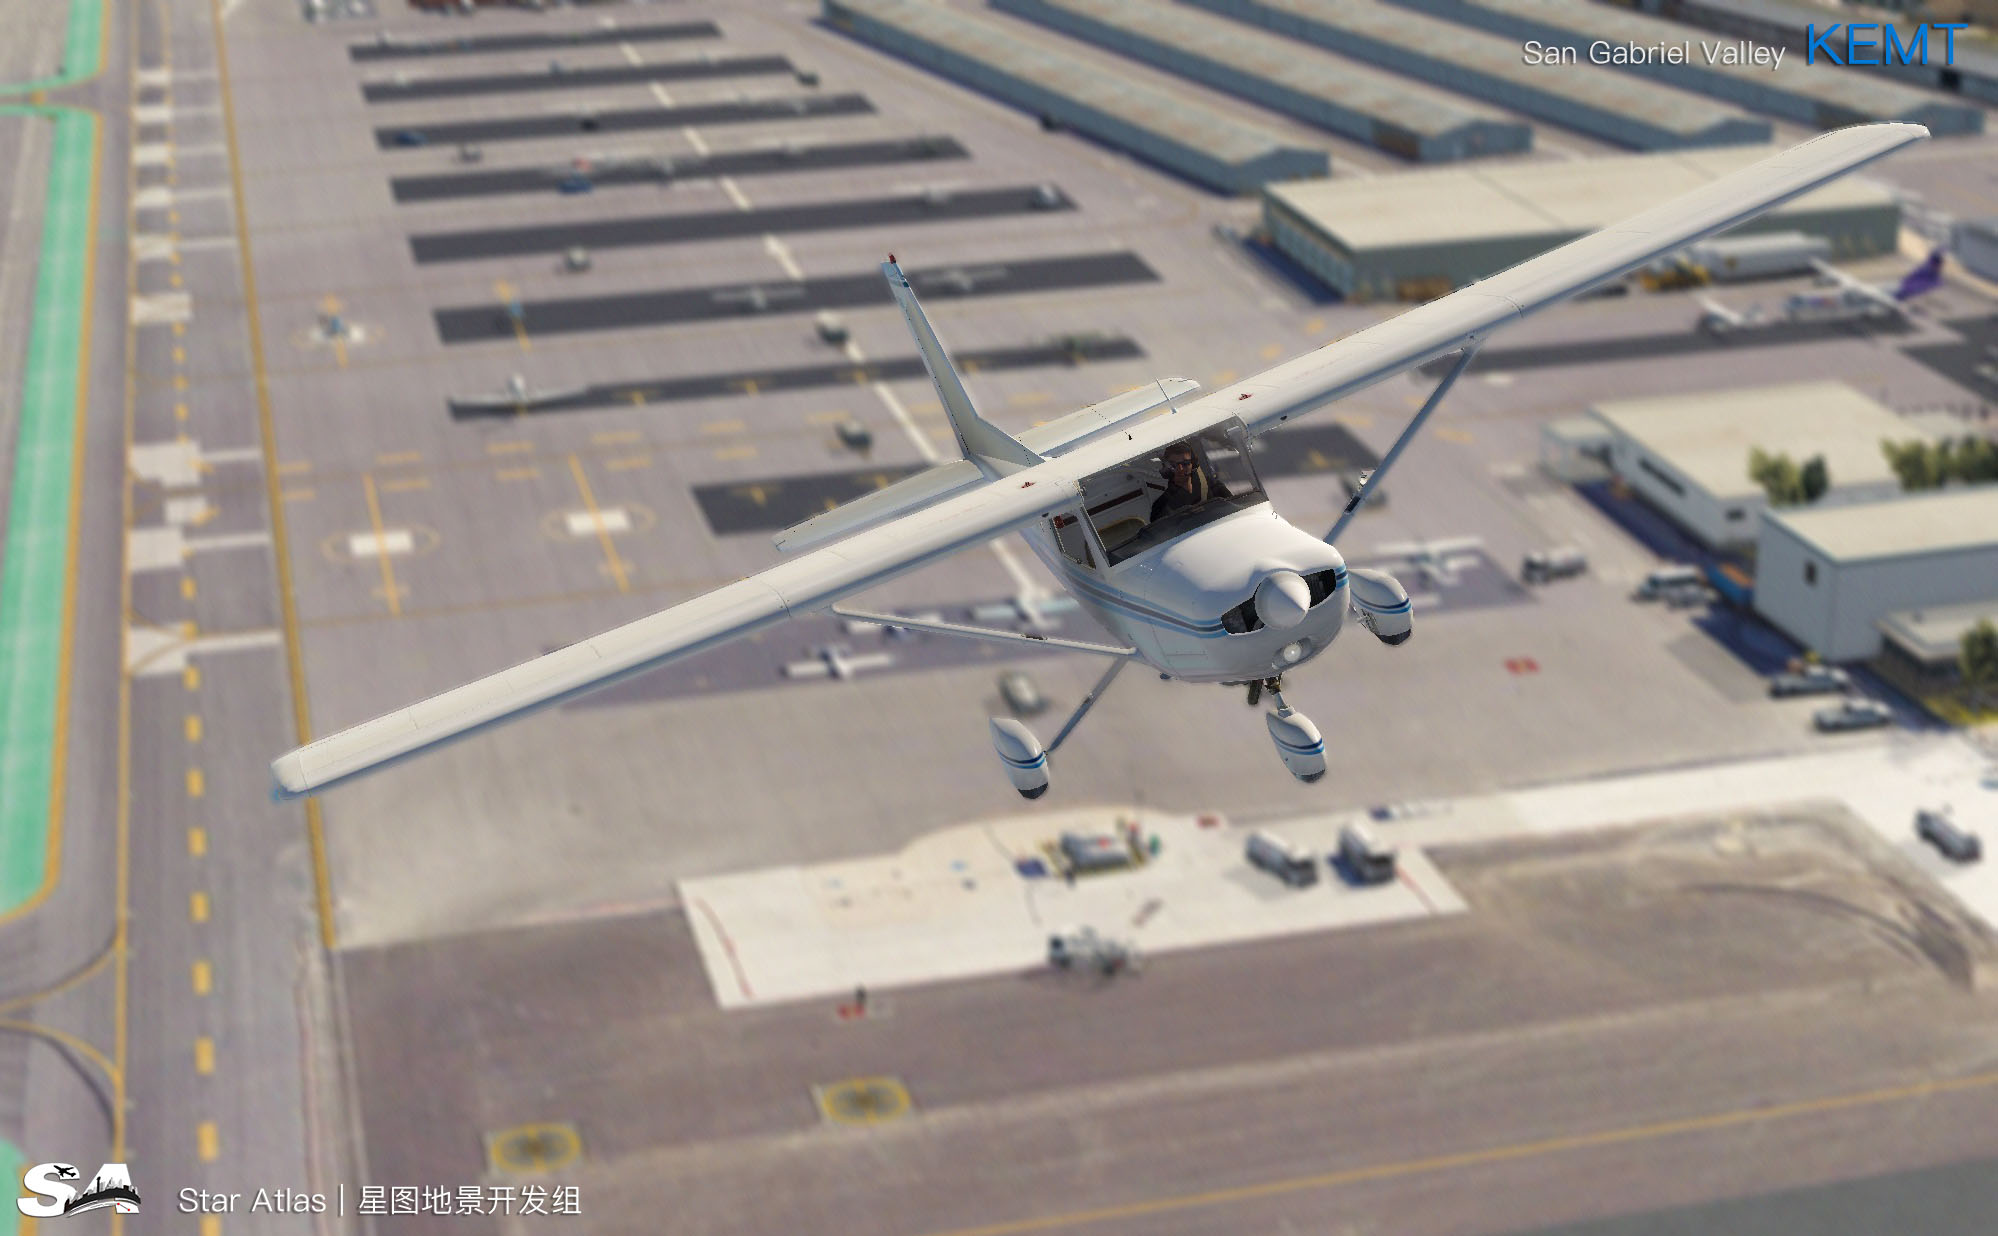 【X-Plane】KEMT-圣盖博谷机场 HD 1.0-9642 